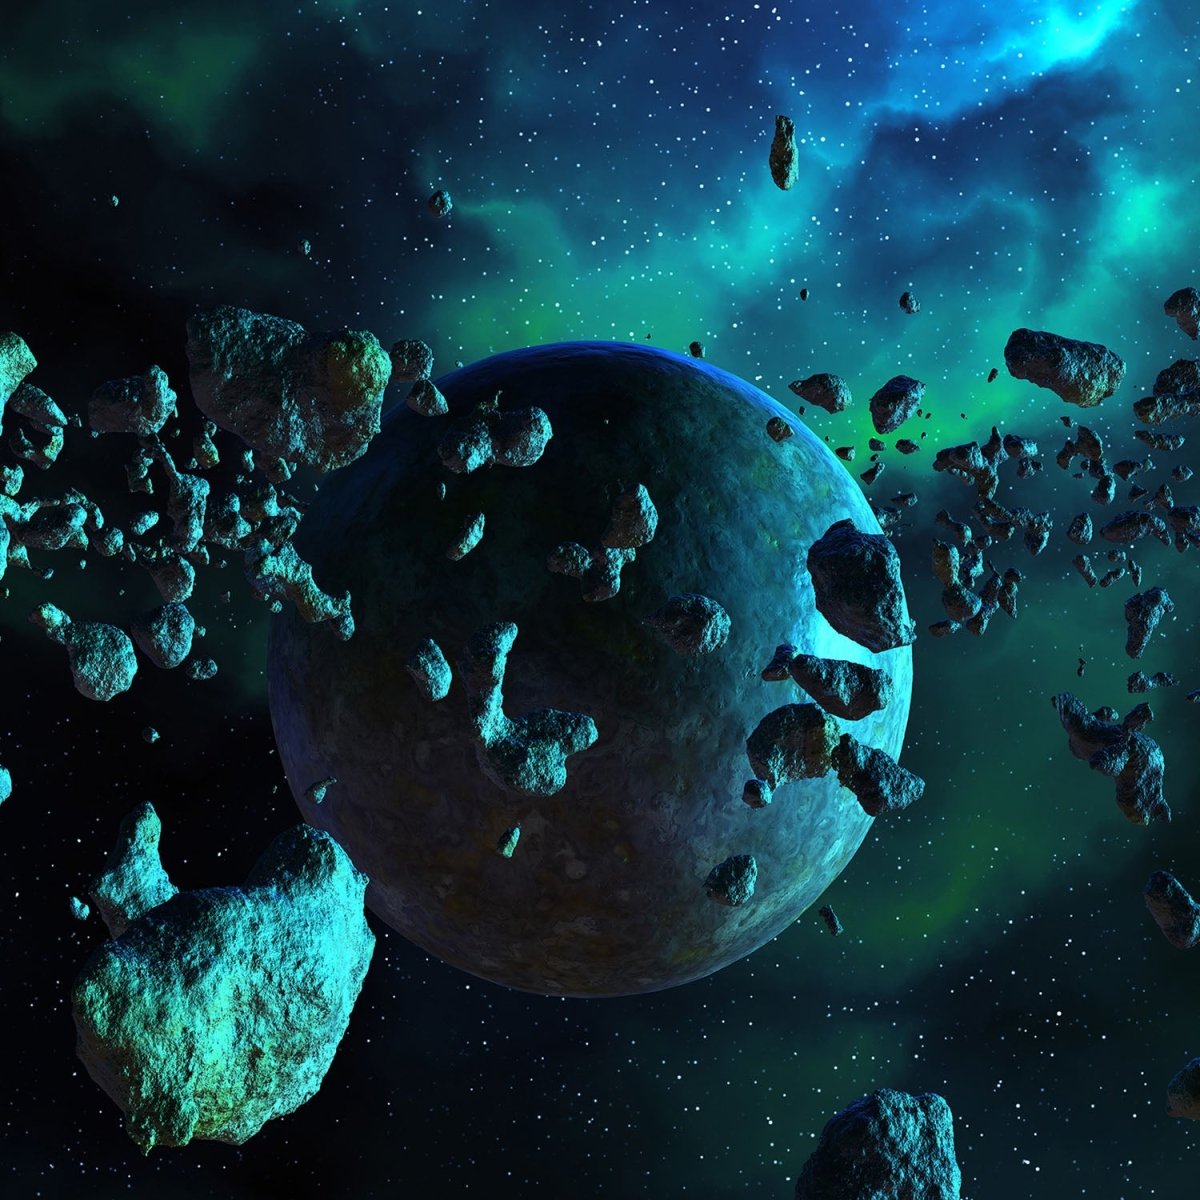 Beistelltisch Asteroidenfeld Space M0263 entdecken - Bild 2